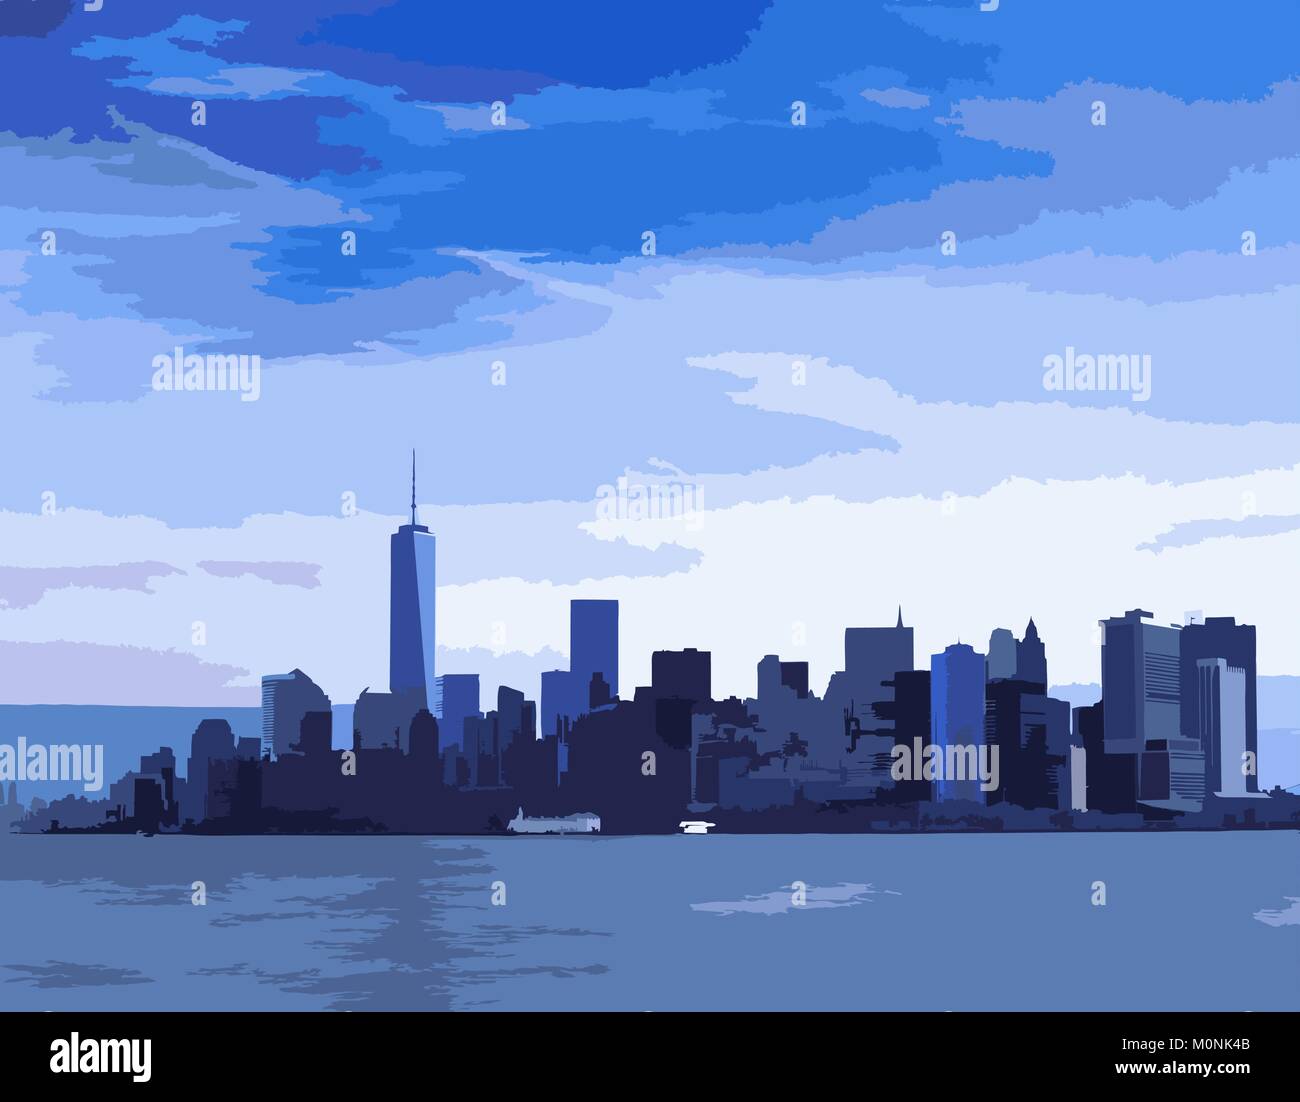 New York City skyline dans des tons bleus. Illustration de Vecteur